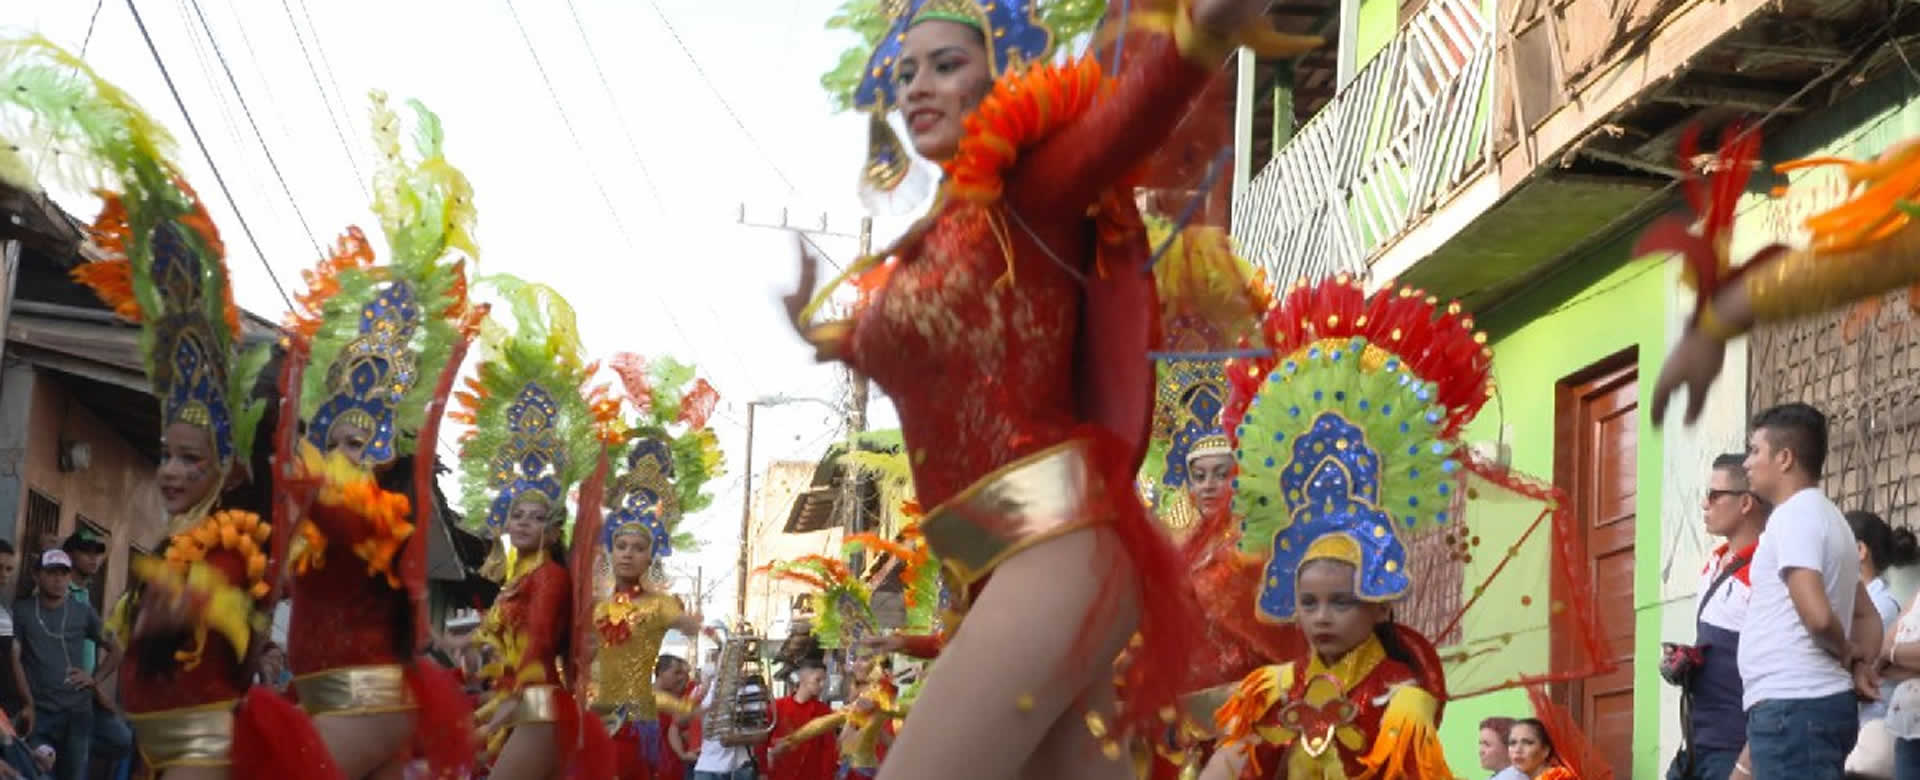 El carnaval acuático llevo la alegría a las calles de San Carlos